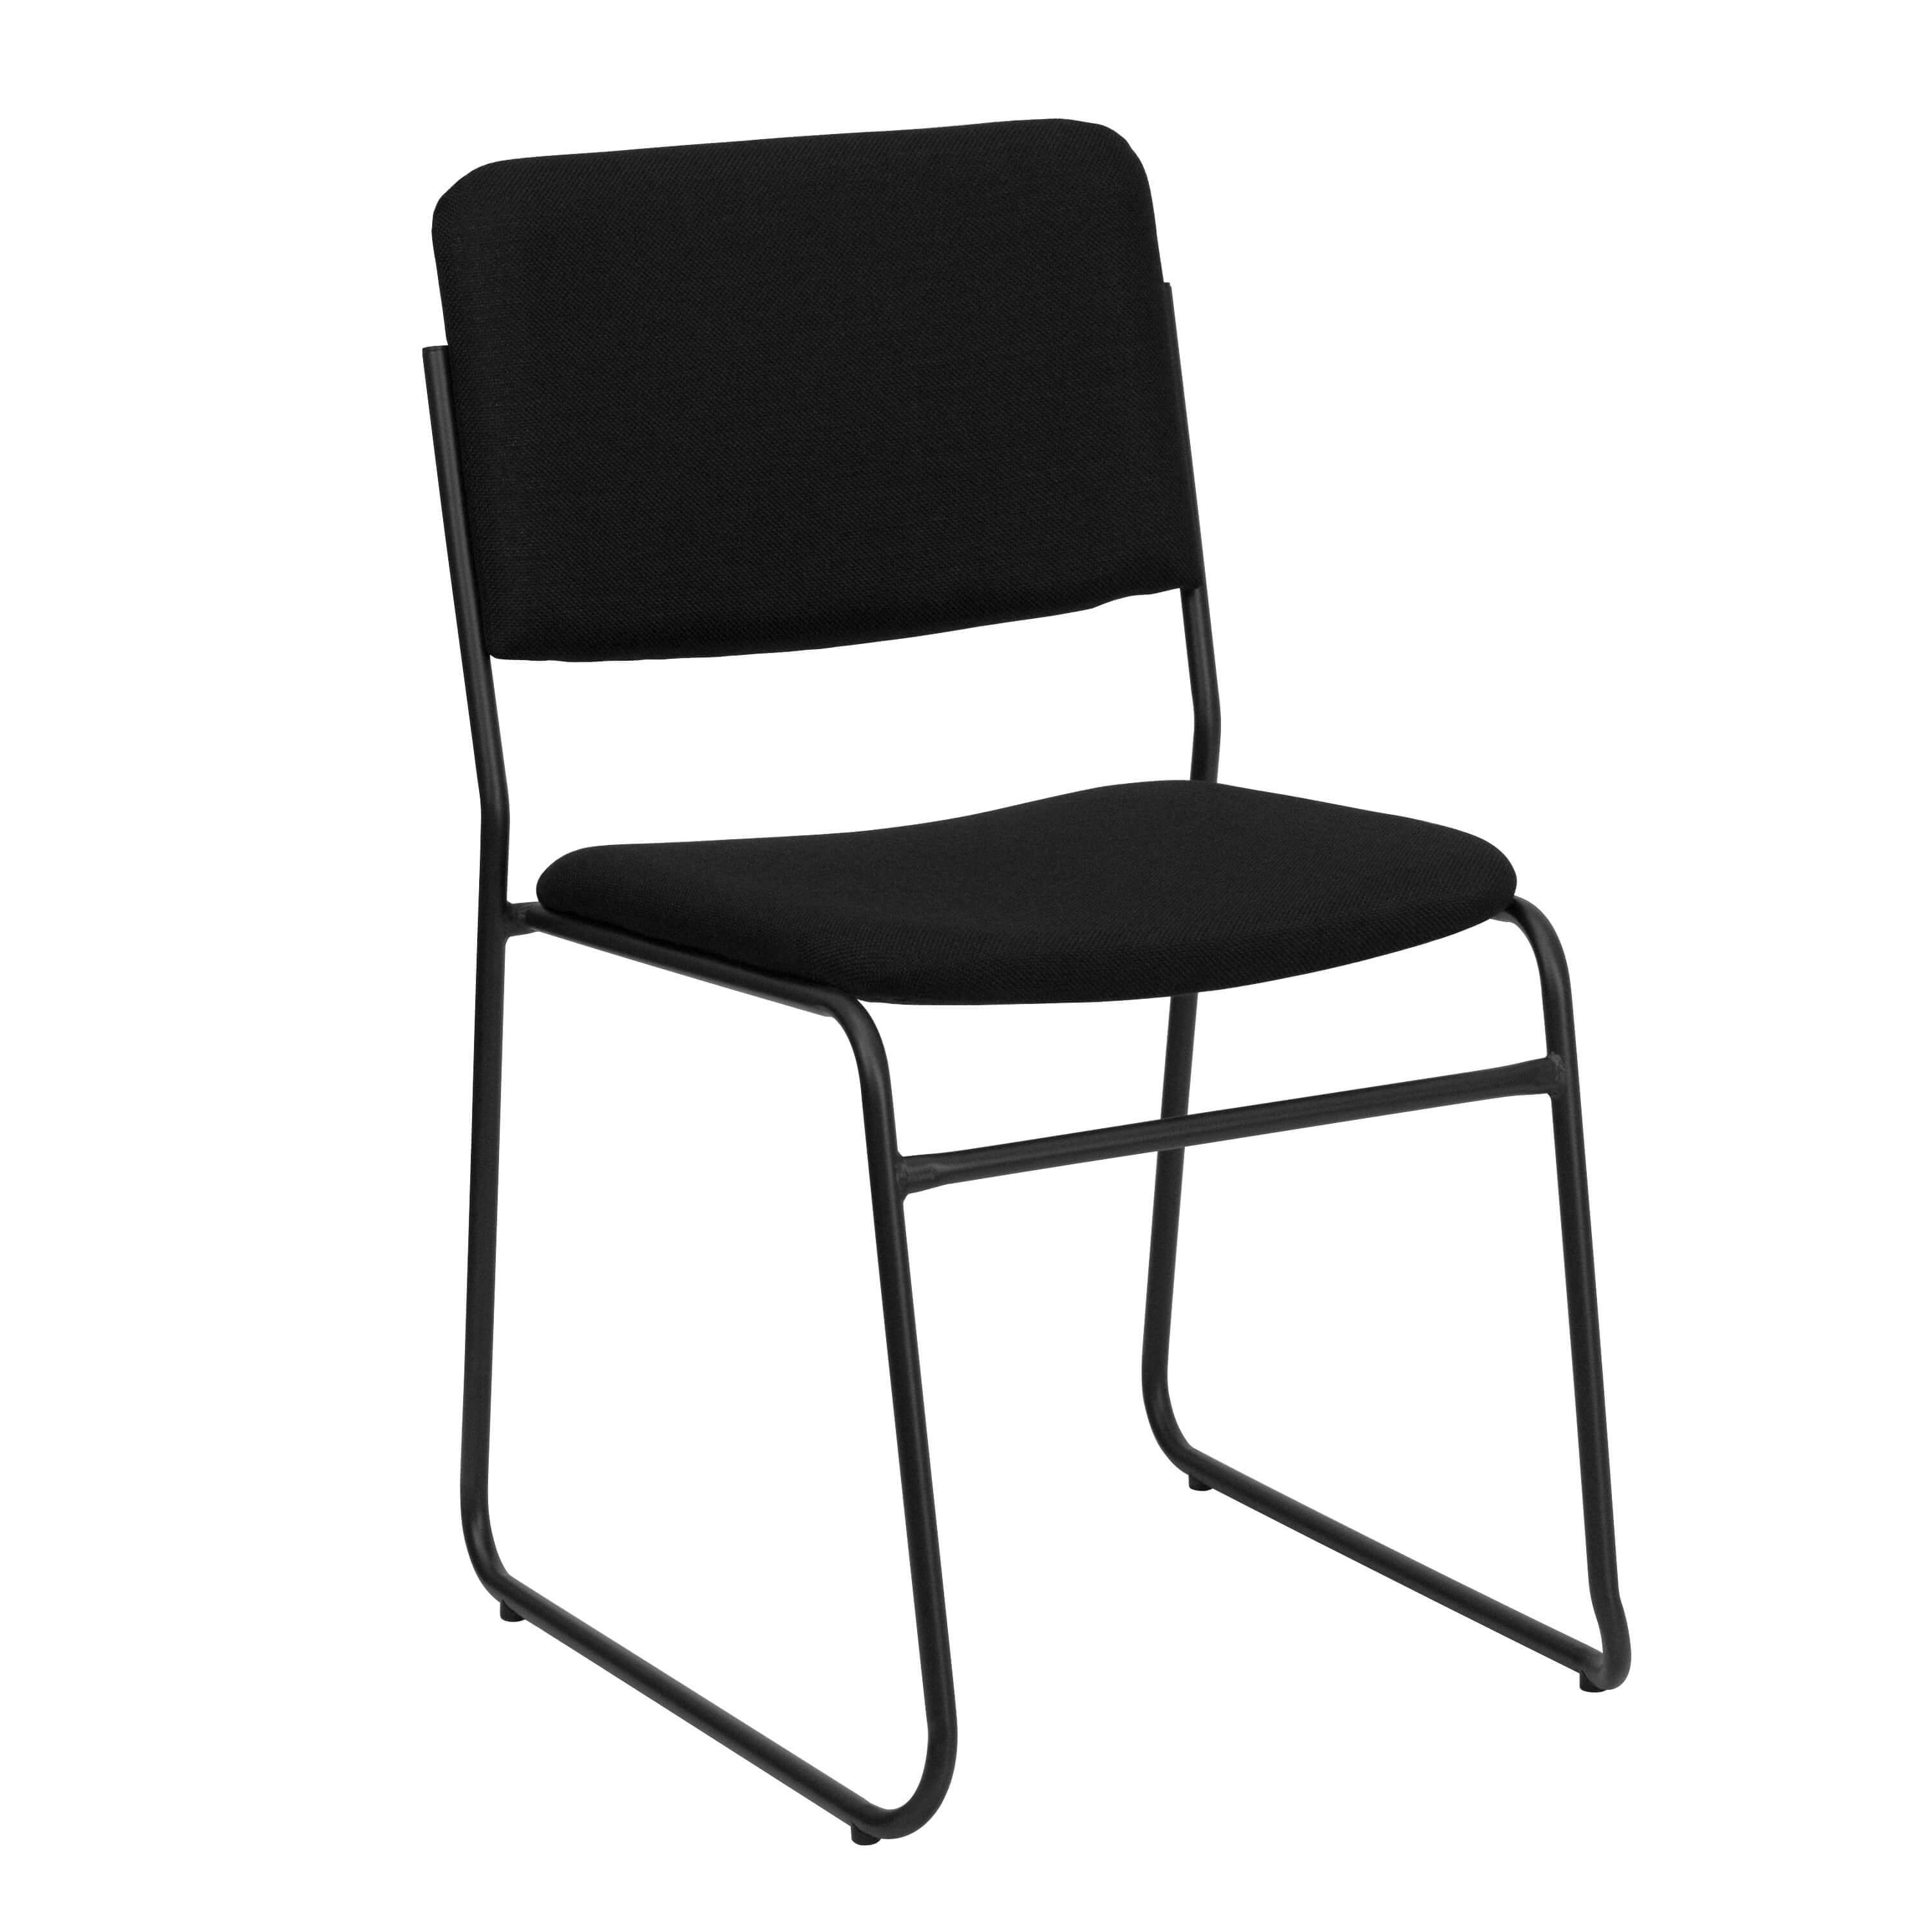 Stackable chairs CUB XU 8700 BLK B 30 GG FLA